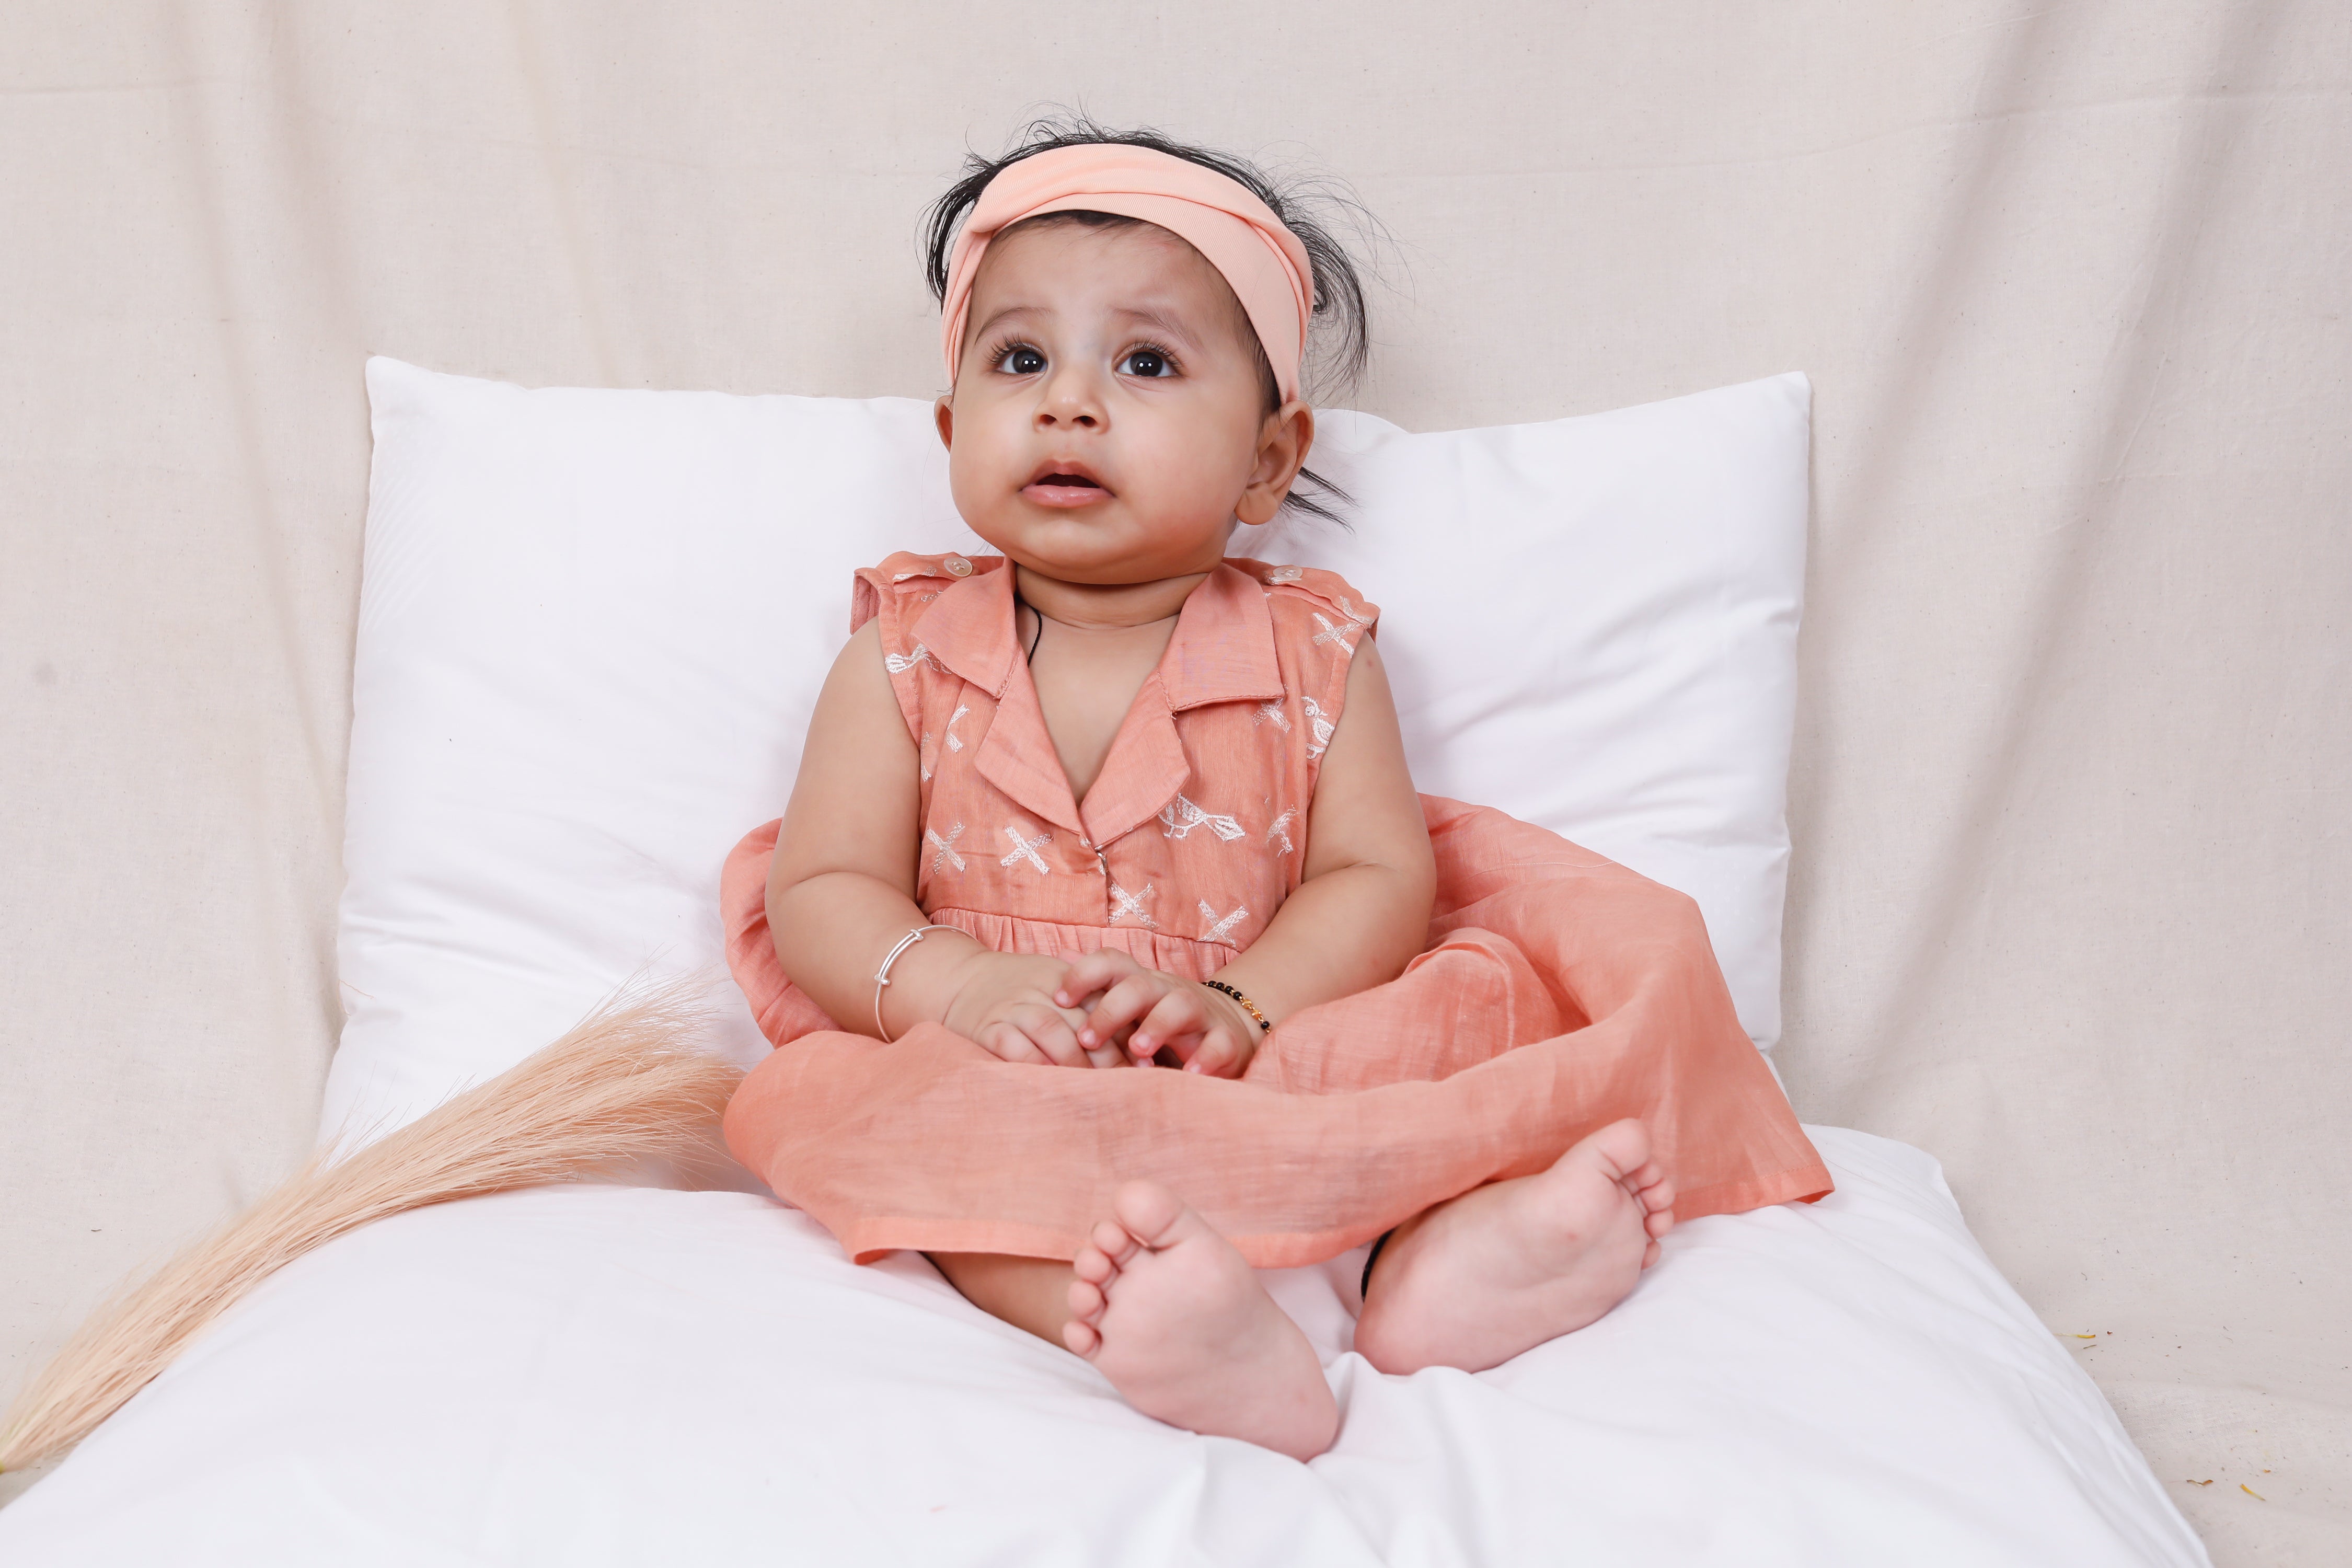 Baby Wearing Premium kids' designer wear Clothing